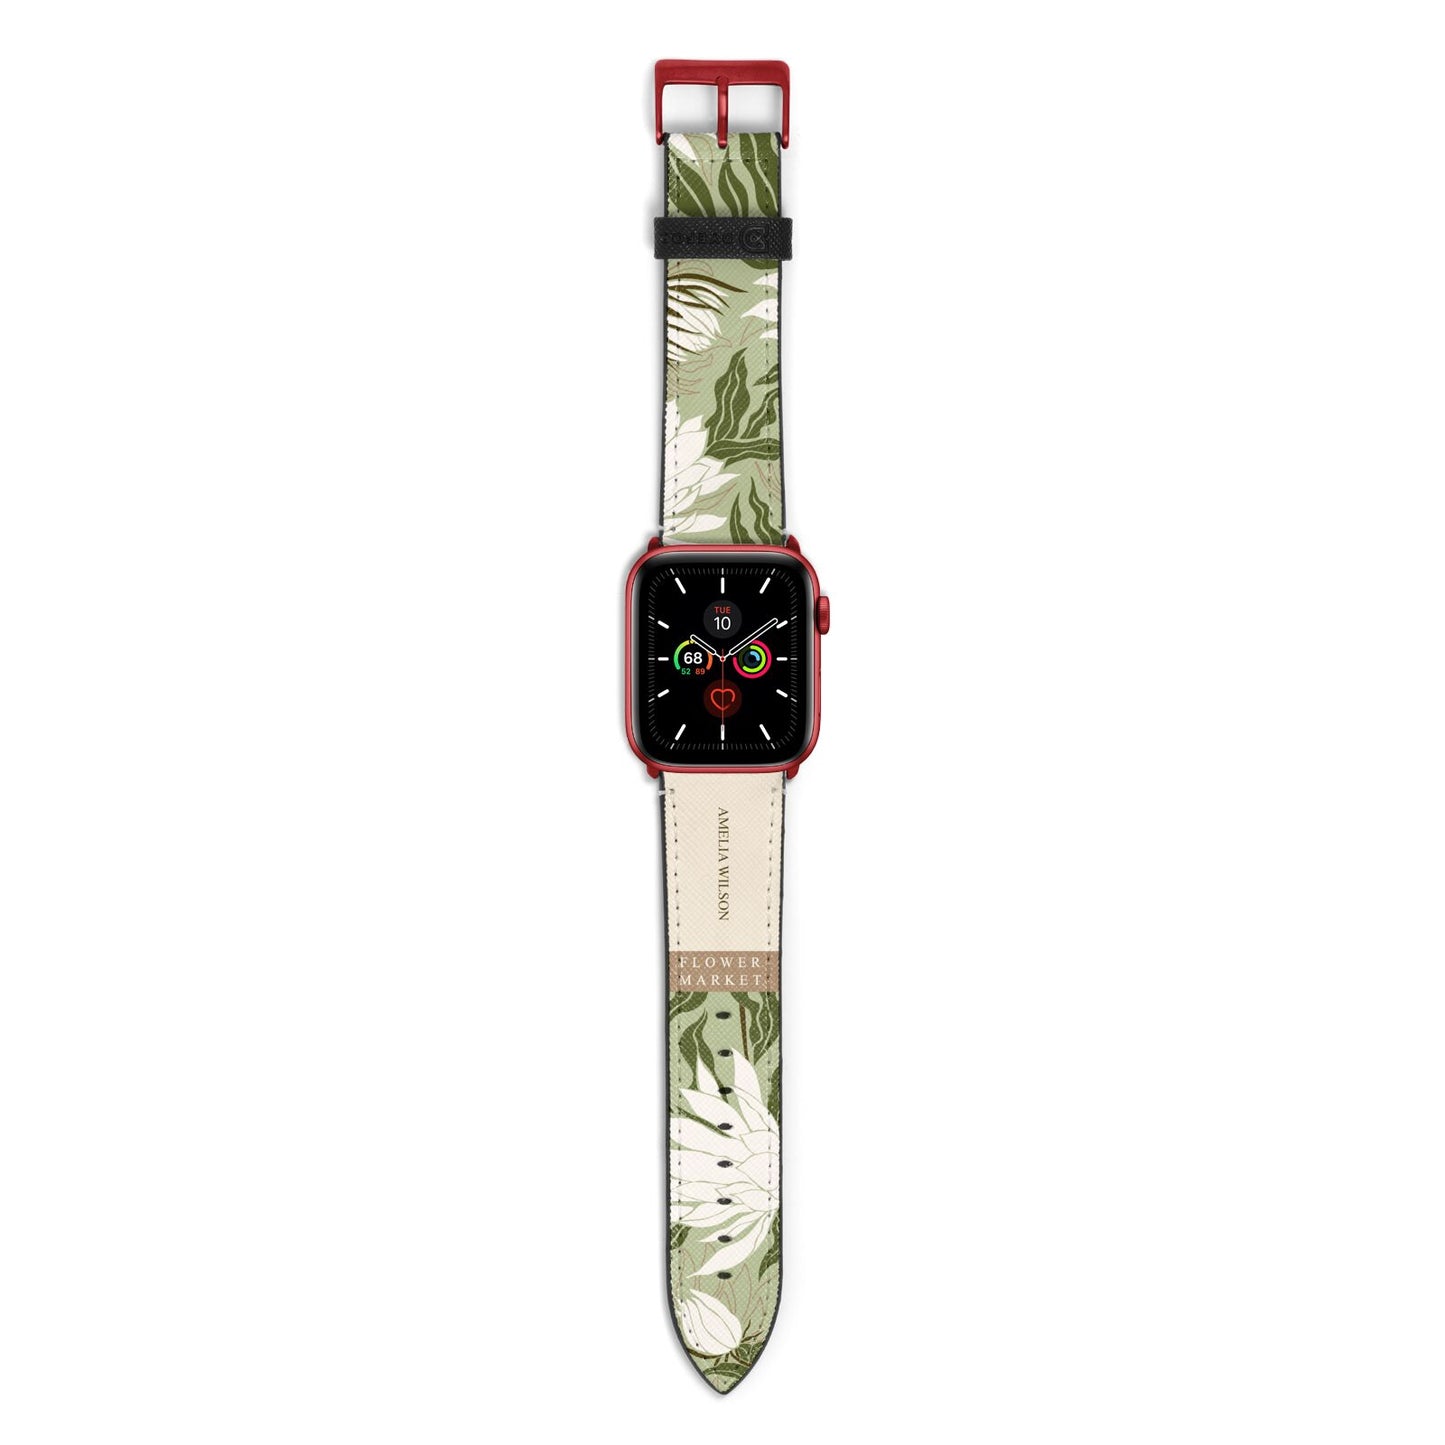 Tokyo Flower Market Apple Watch Strap with Red Hardware